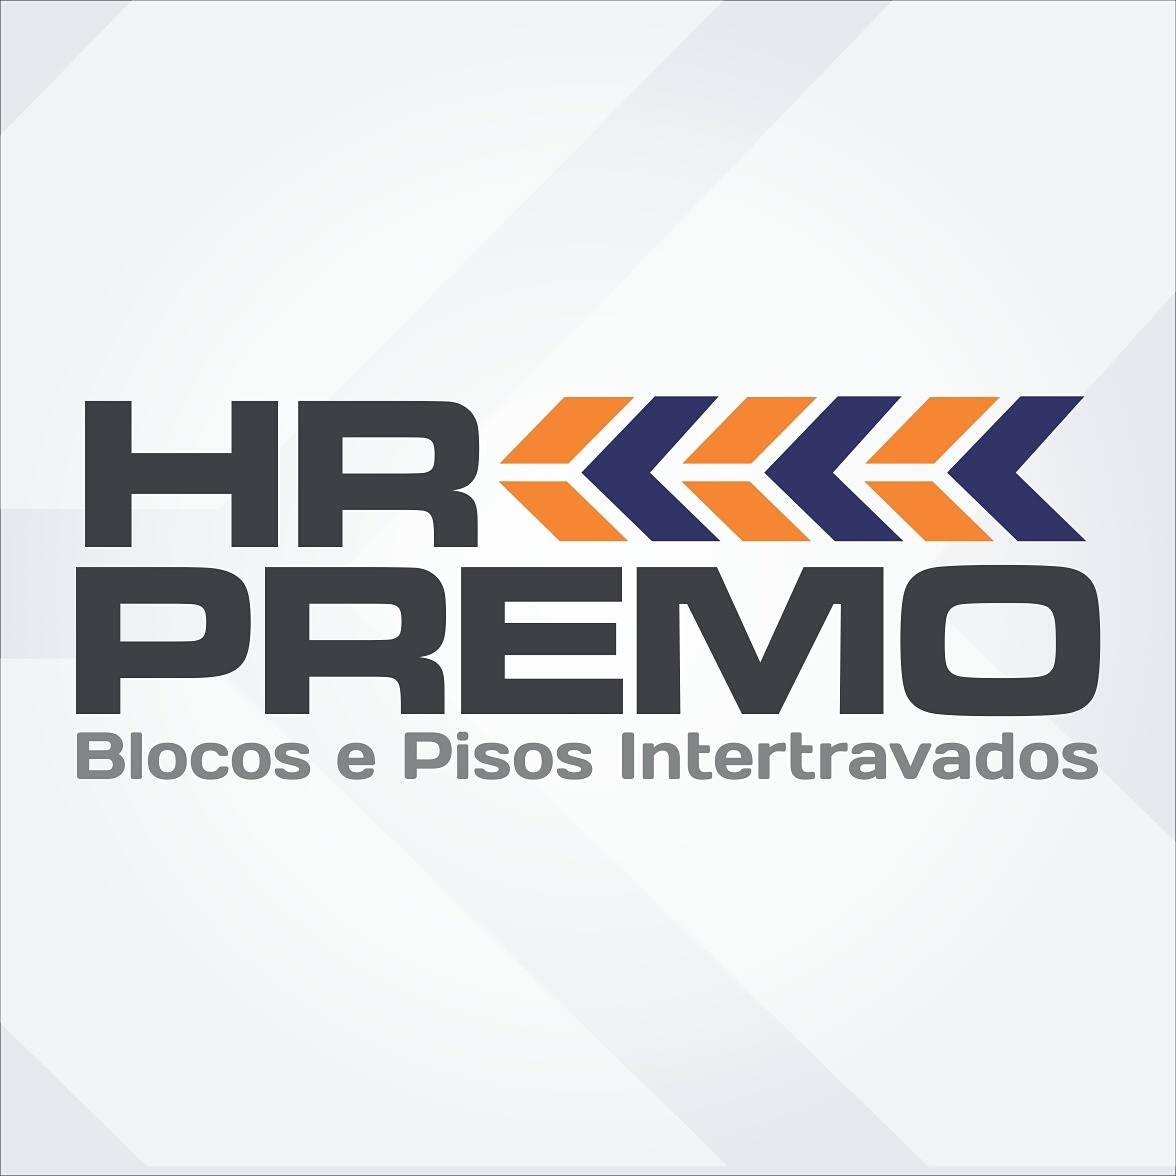 HR PREMO - BLOCOS E PISOS INTERTRAVADOS - Cimento e Concreto - Juiz de Fora, MG